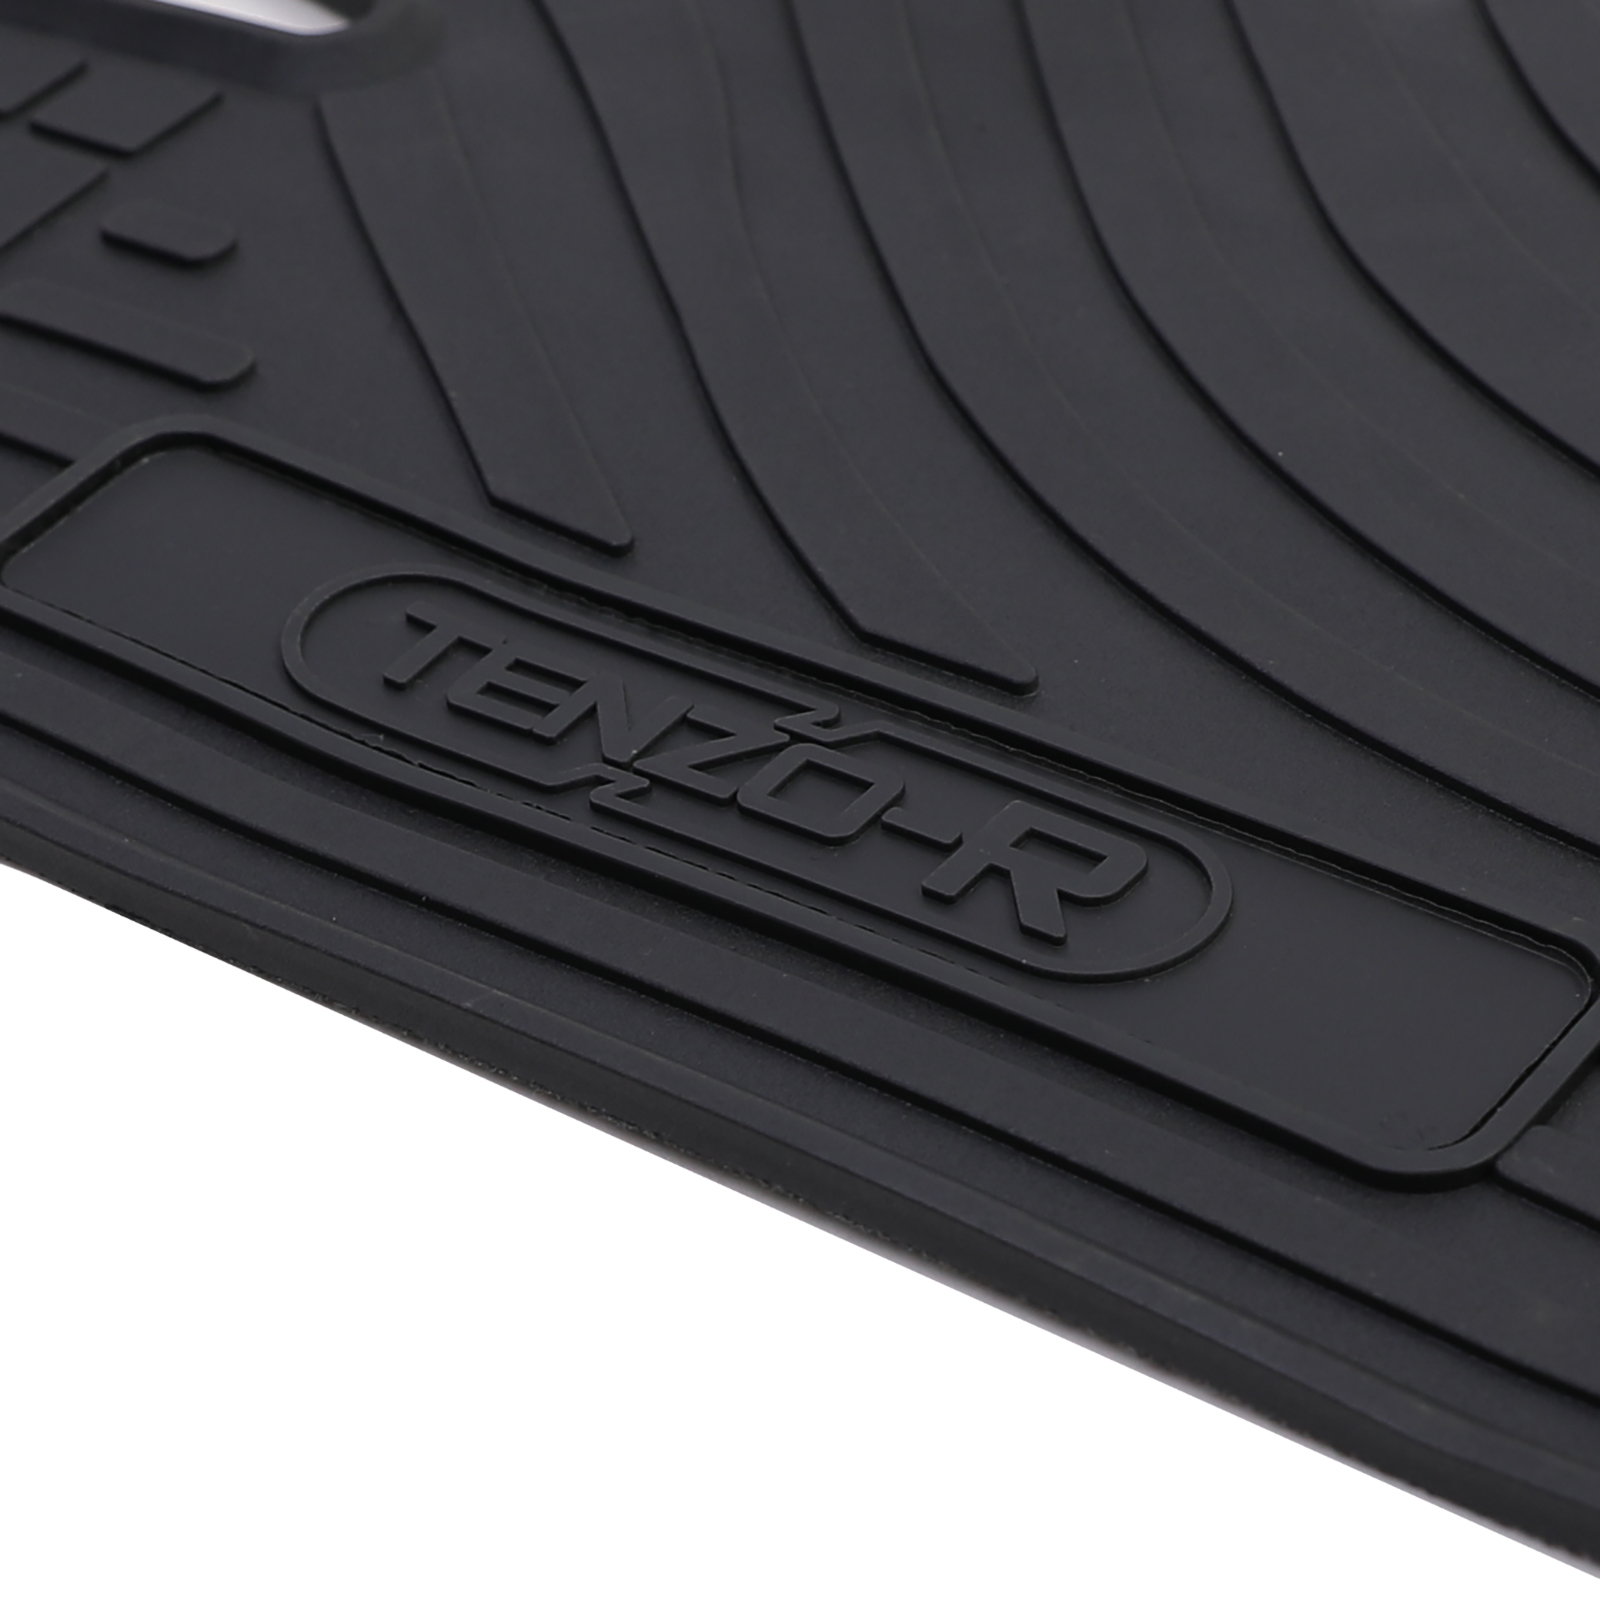 Premium Gummi Fußmatten Set 4-teilig Schwarz für Ford Focus III 10-18 kaufen